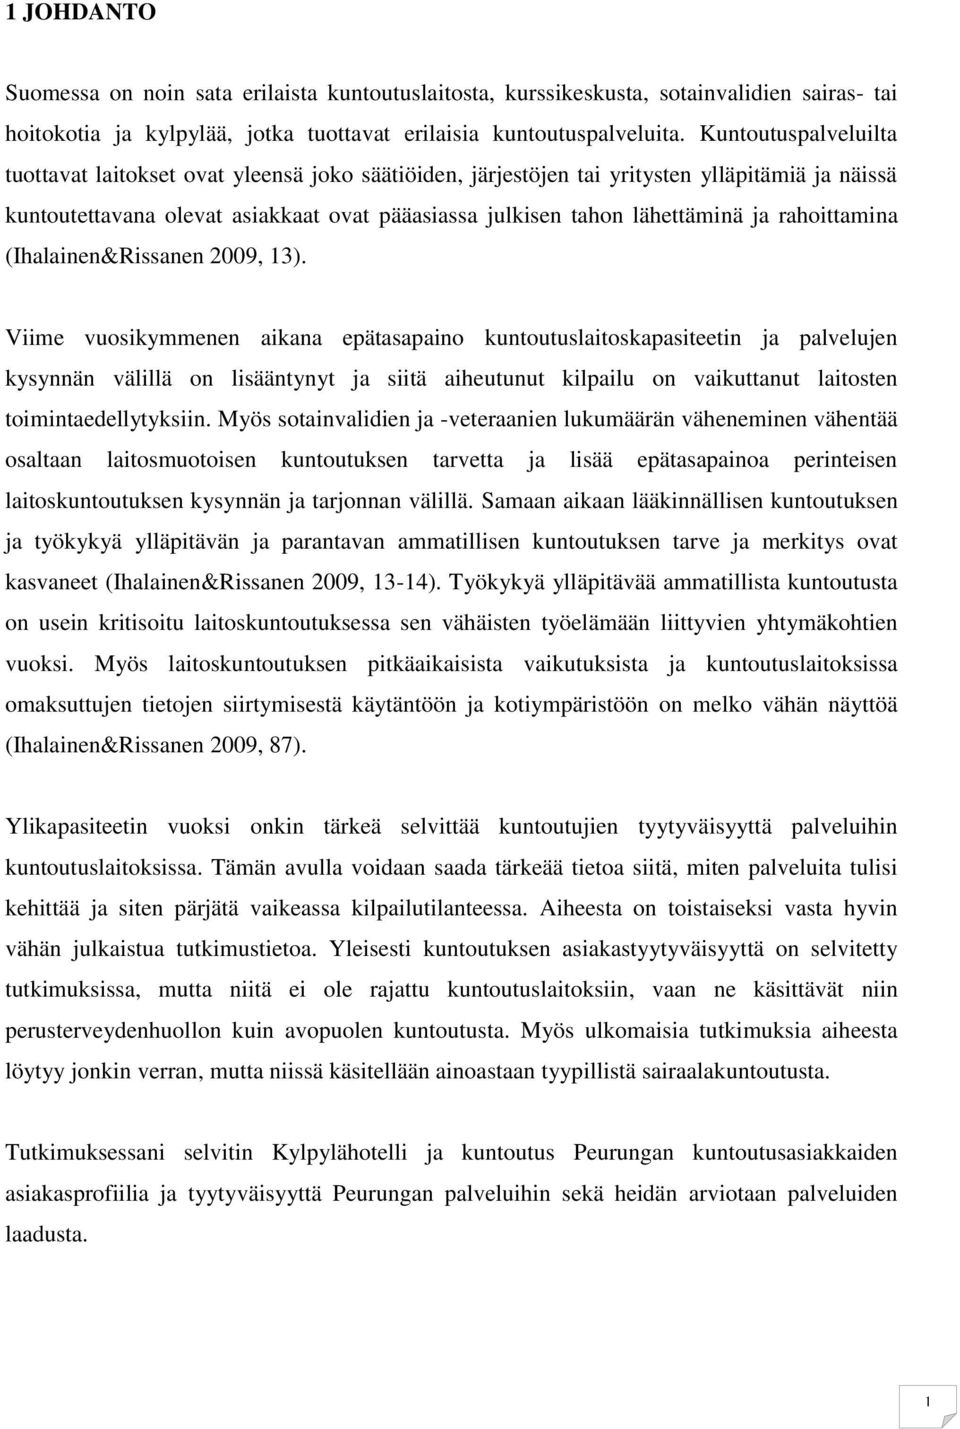 rahoittamina (Ihalainen&Rissanen 2009, 13).